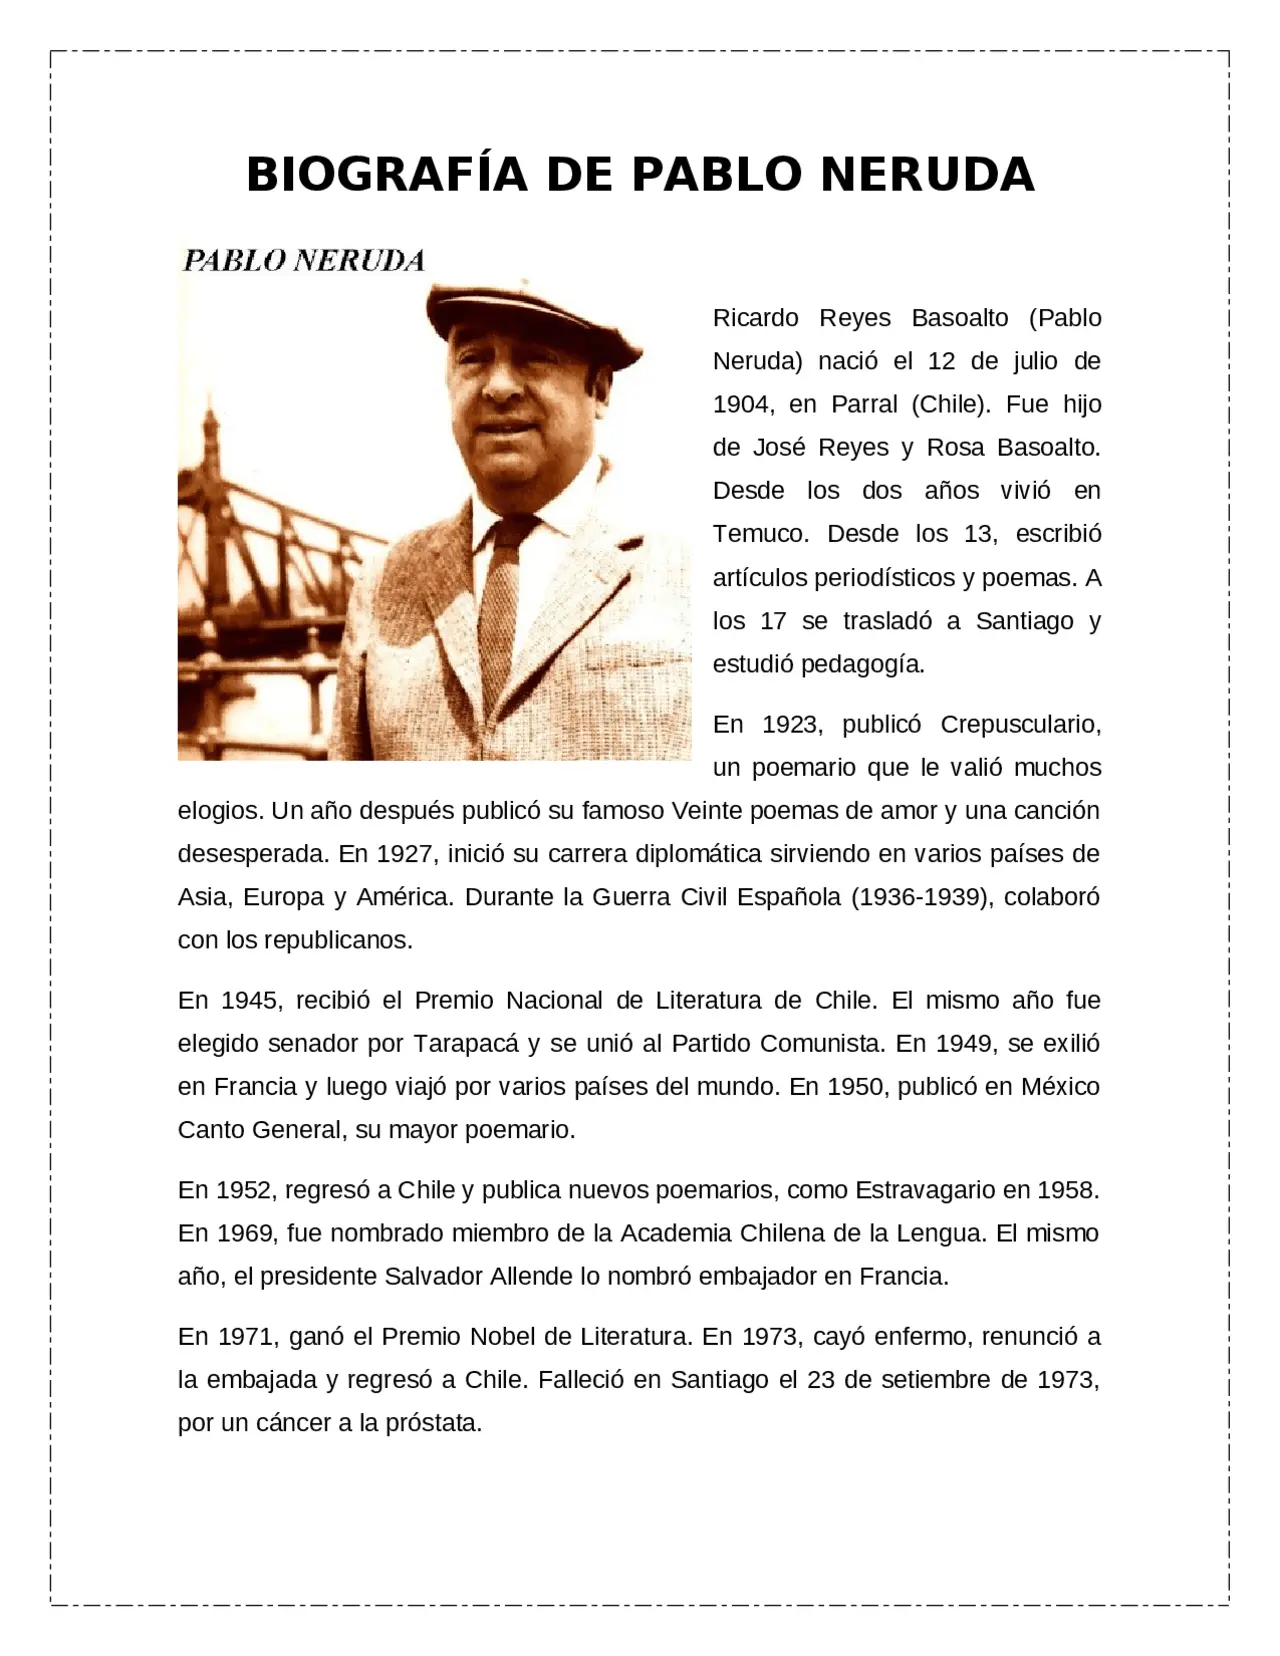 la vida de pablo neruda resumida - Quién es Pablo Neruda breve biografía